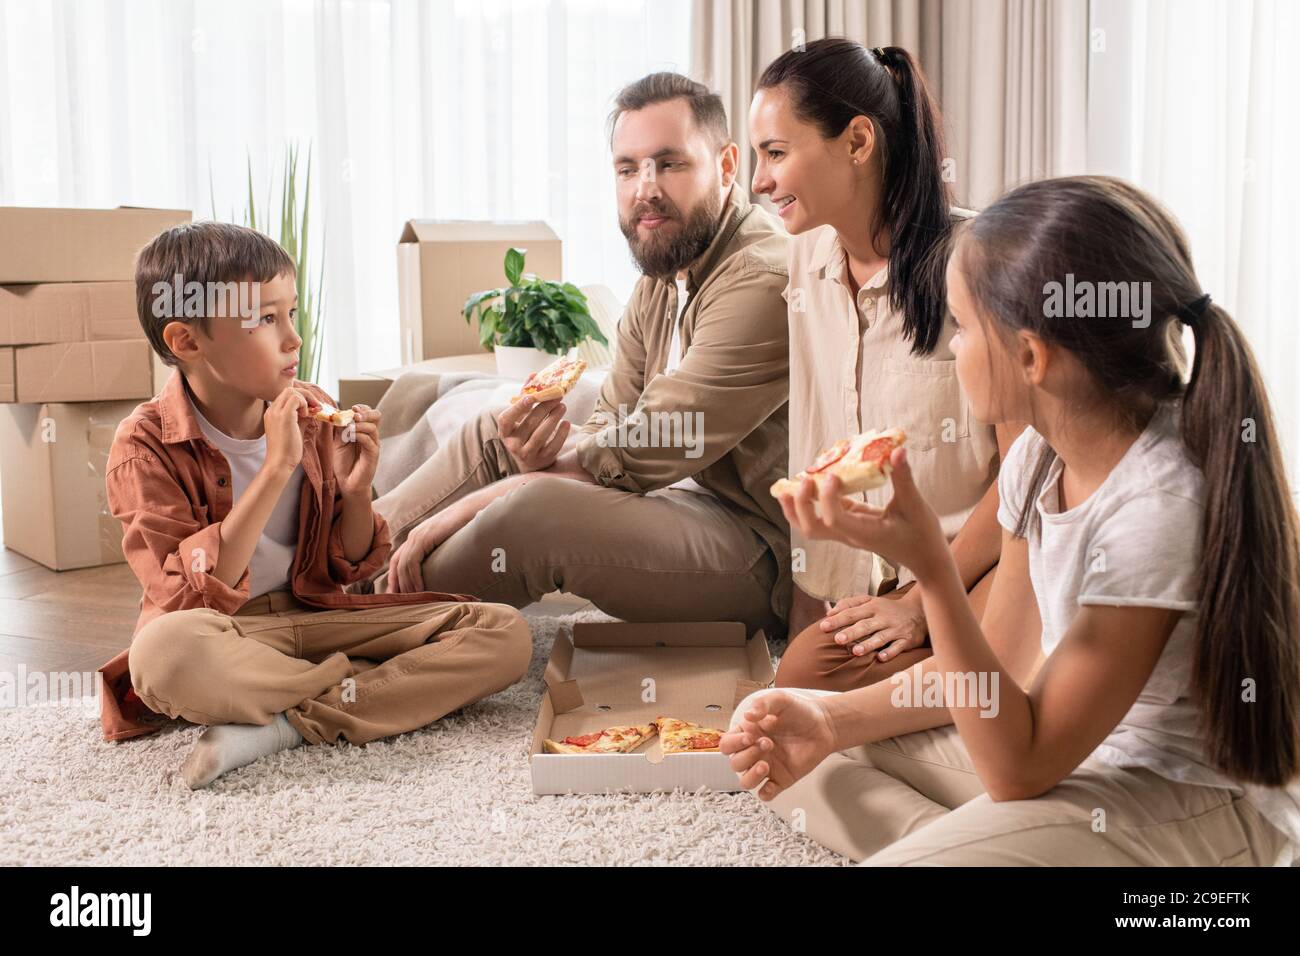 Freundliche junge Familie sitzt auf dem Teppich in einem neuen Haus voller Umzugskartons und Essen Pizza zum Abendessen Stockfoto